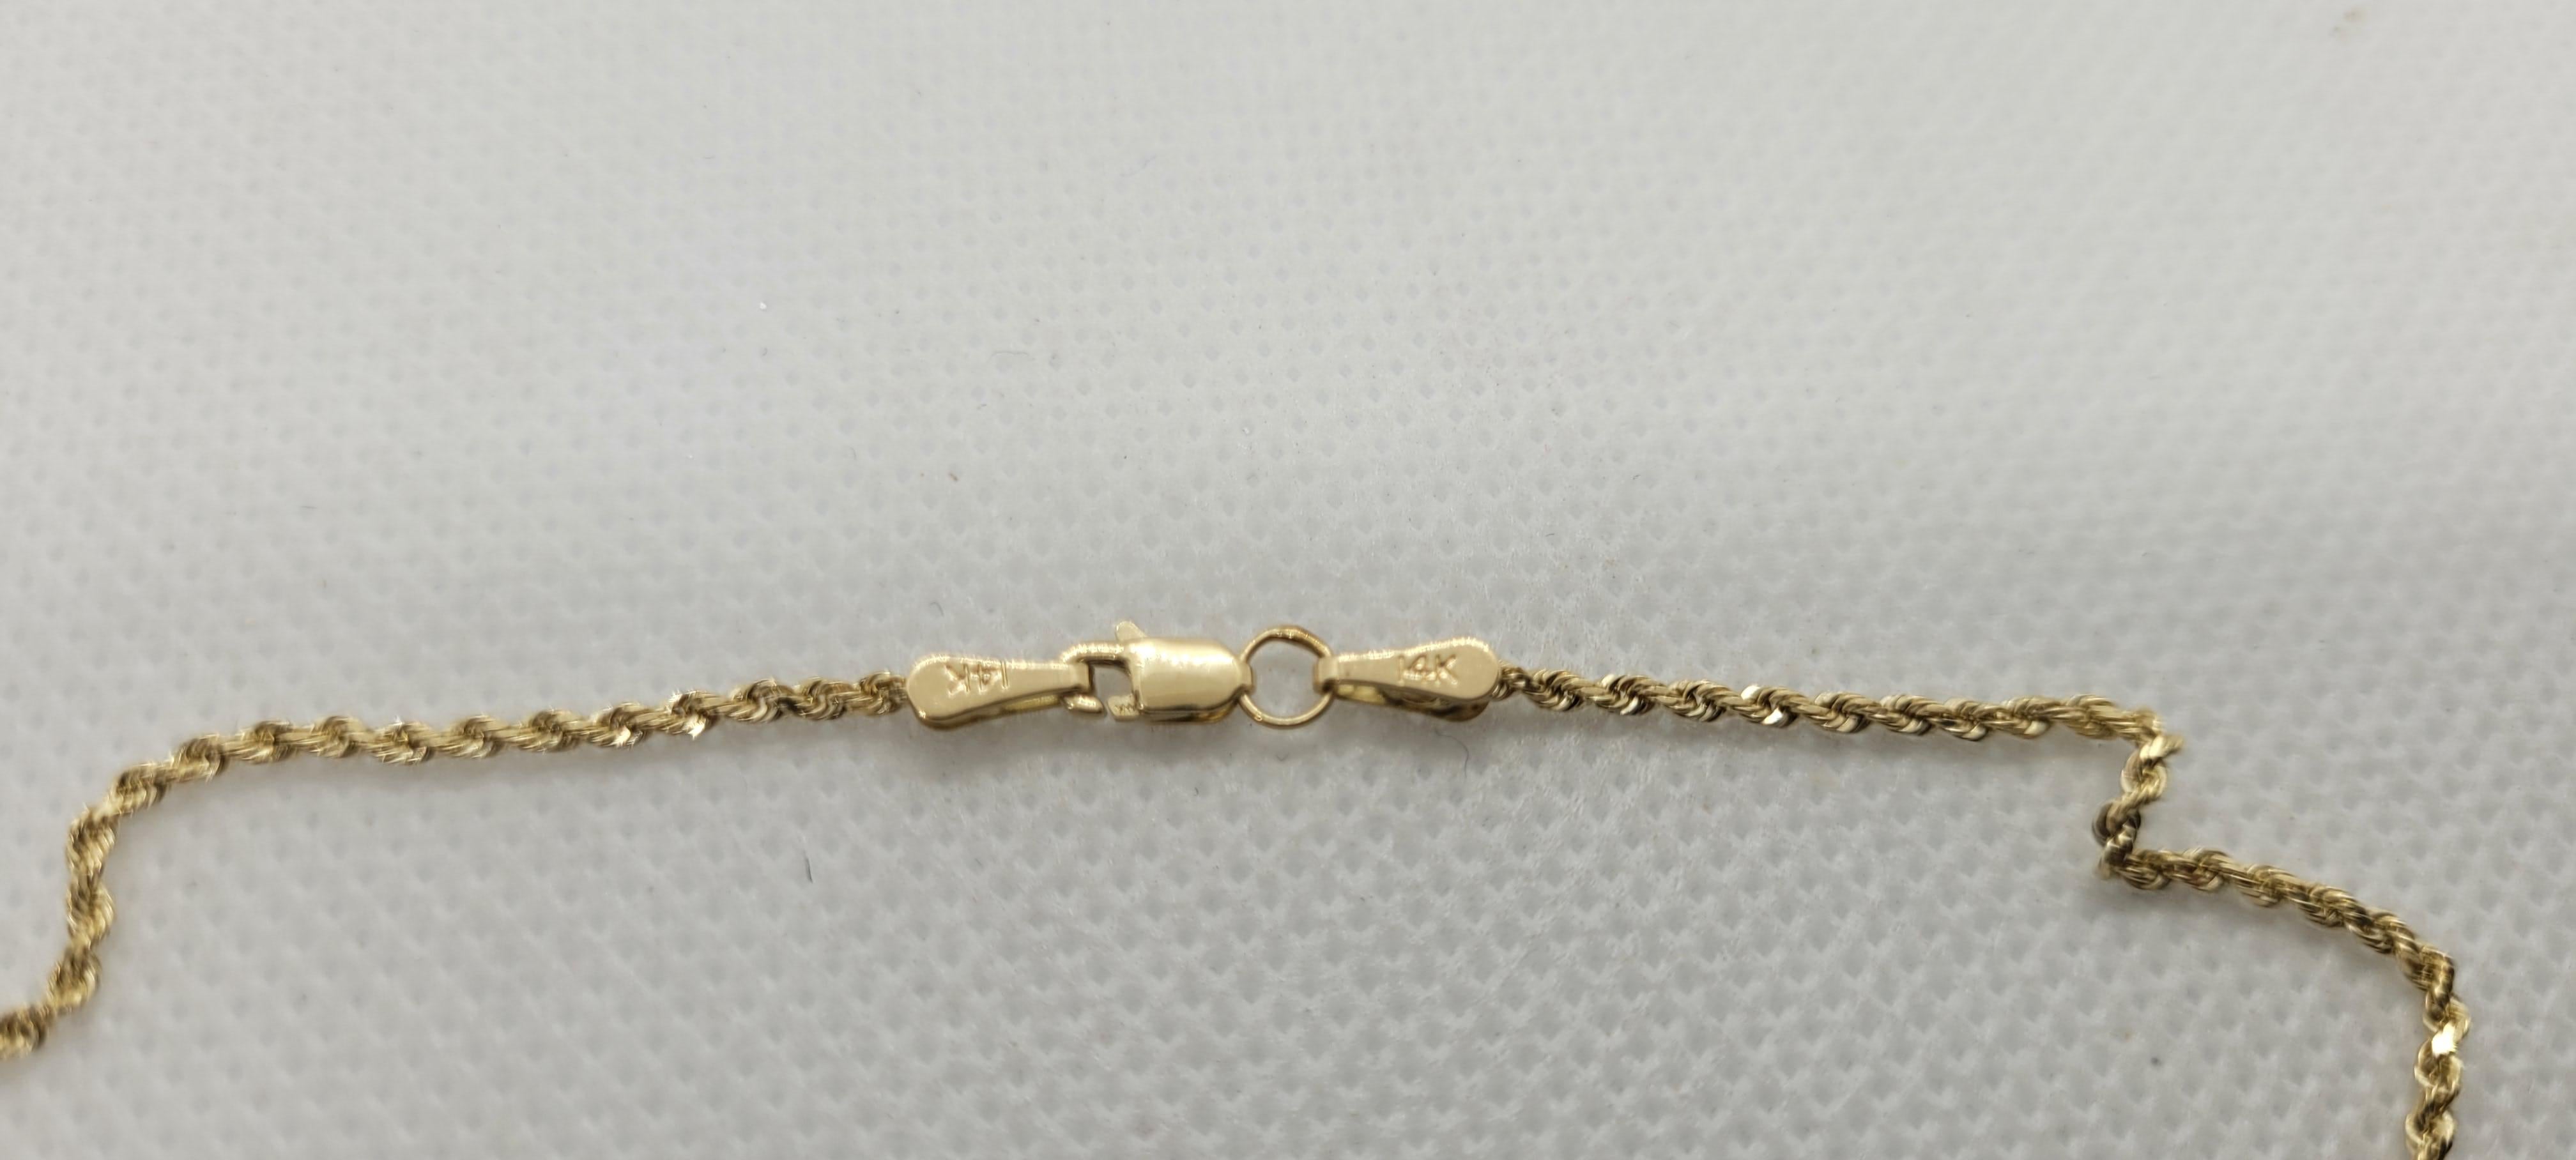 La chaîne en or jaune 14kt de Bailey Banks & Biddle, d'une longueur de 20 pouces et d'un diamètre de 1,6 mm, est un must pour tout amateur de bijoux. La chaîne est fixée à l'aide d'un solide fermoir à mousqueton et pèse confortablement 4,8 grammes.